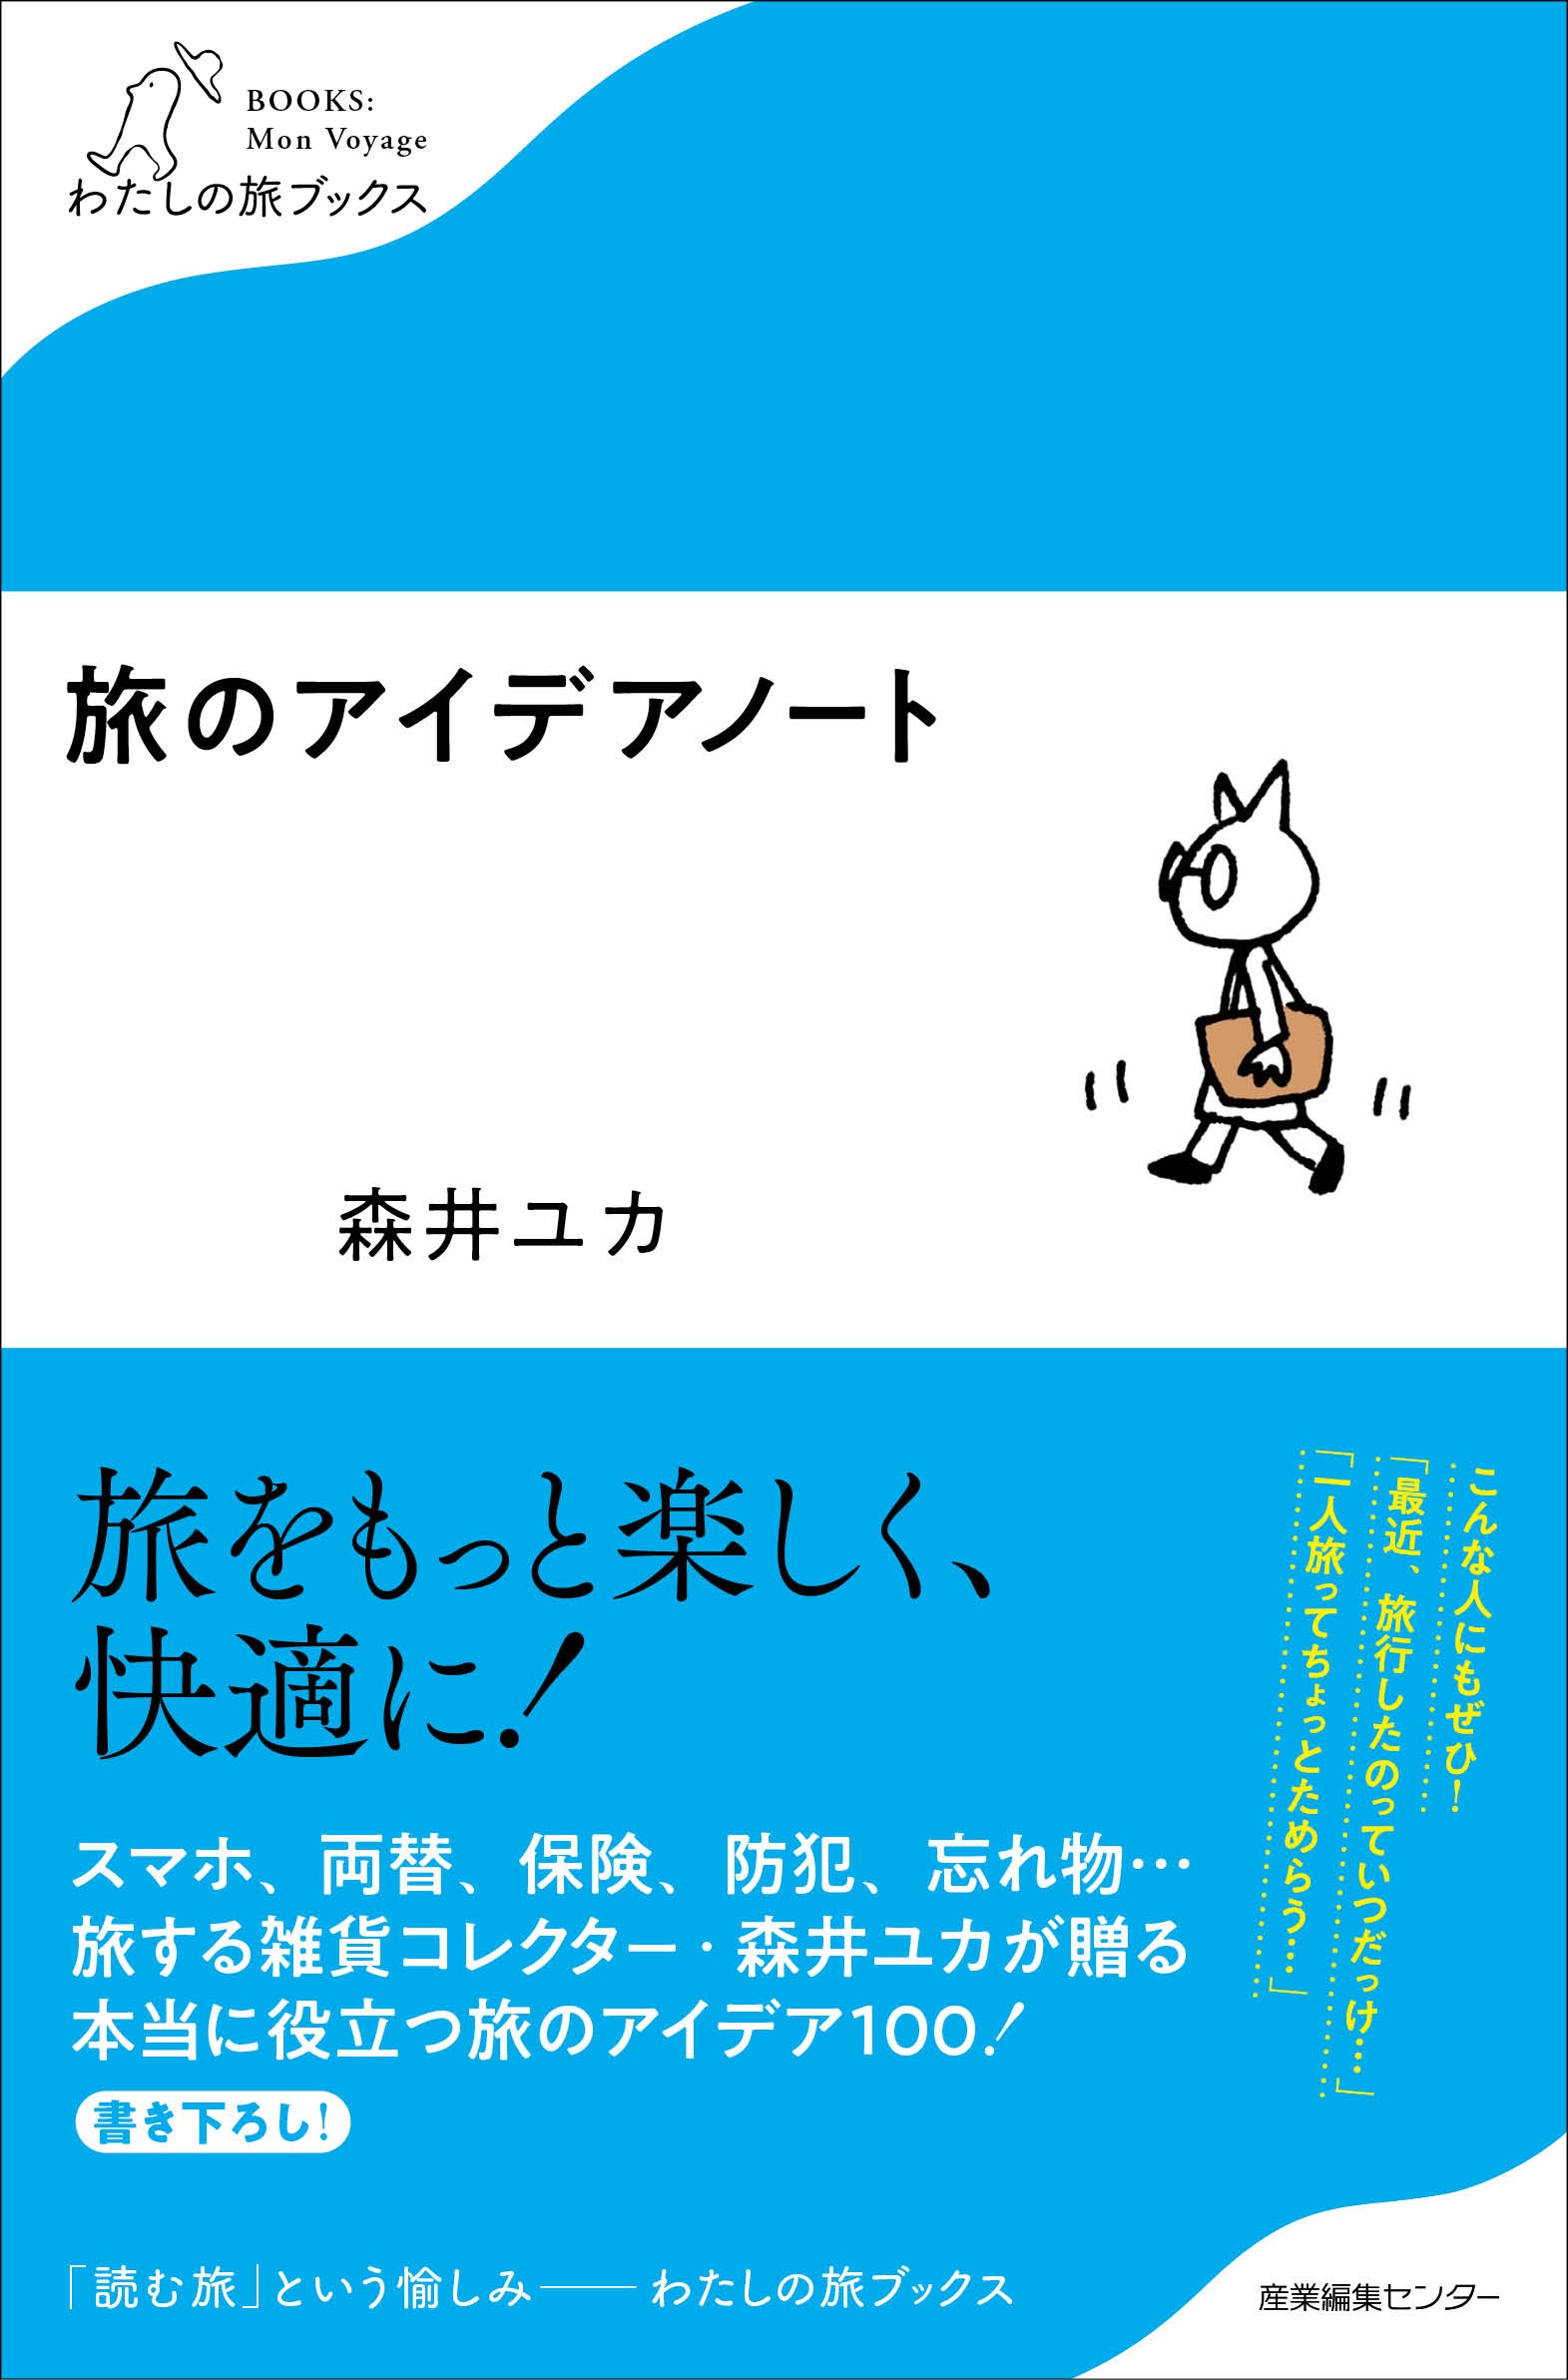 森井ユカ先生の書籍「旅と雑貨とデザインと」